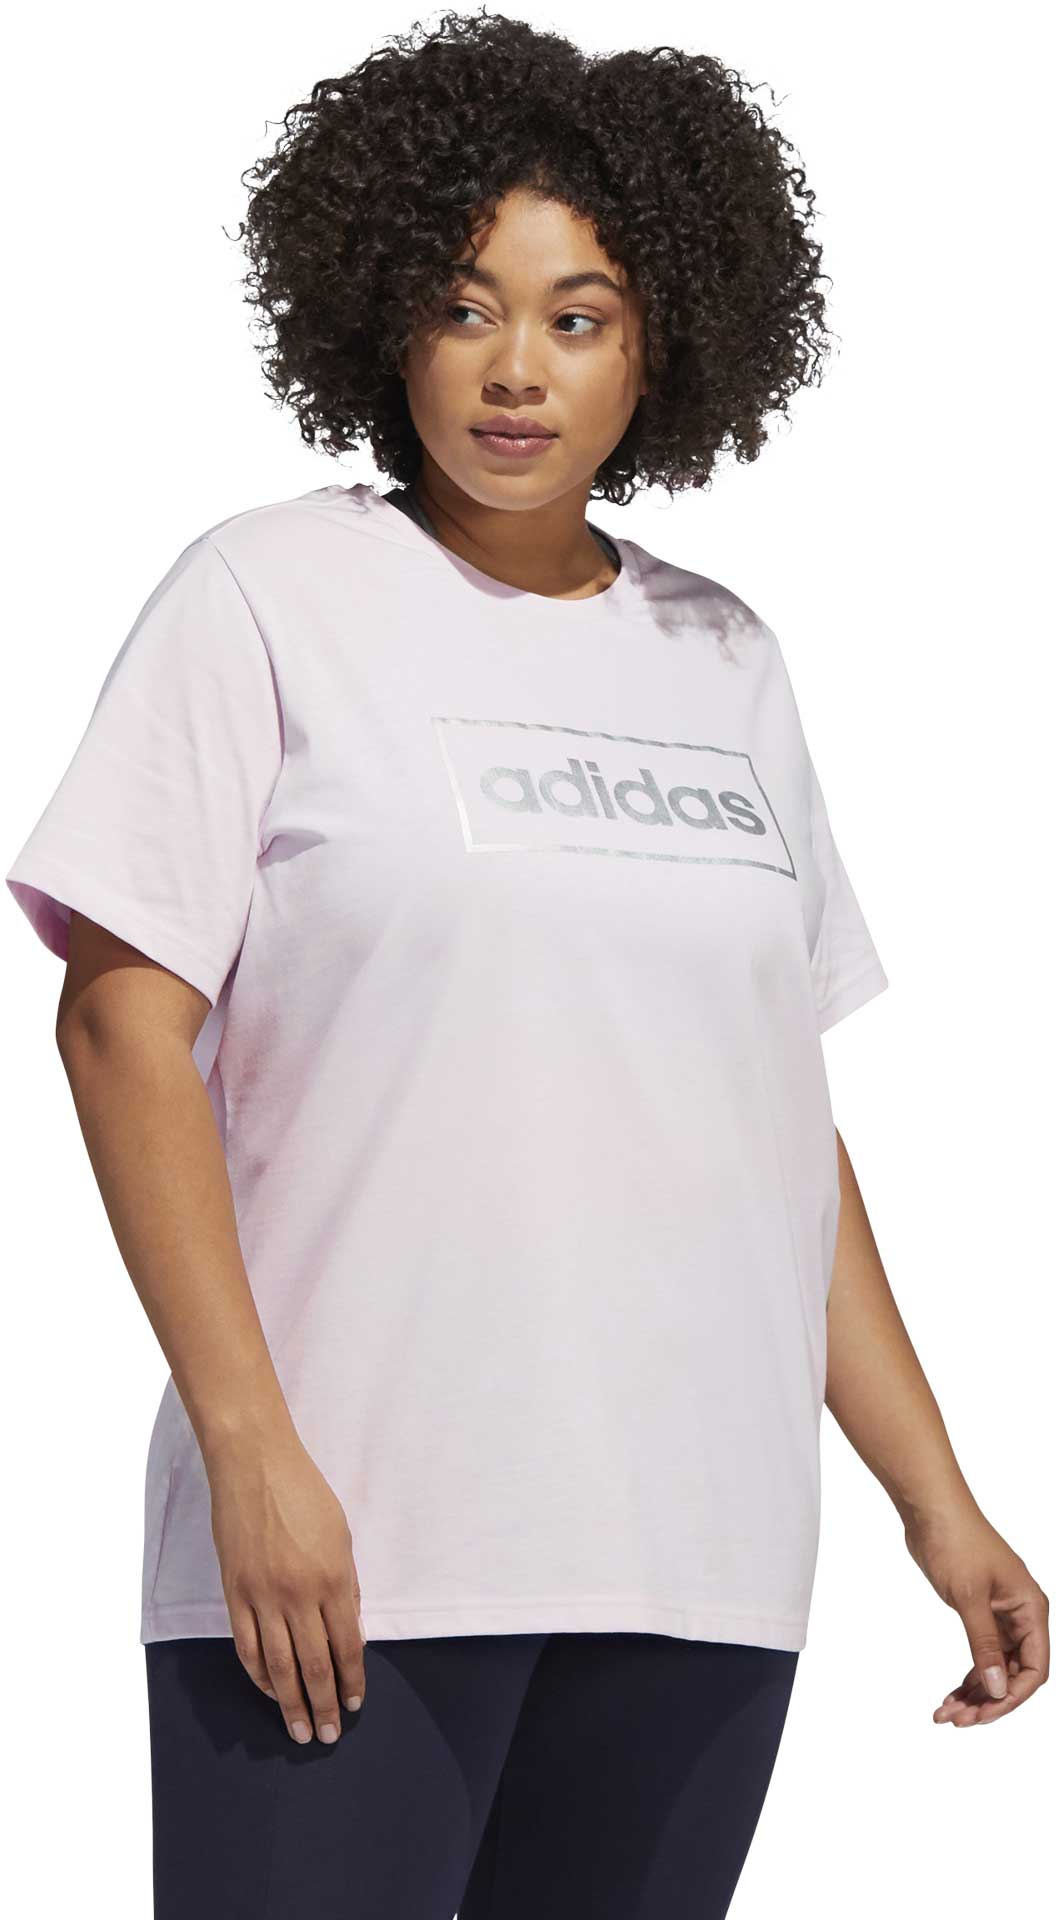 Plus Size Sportshirt für Damen